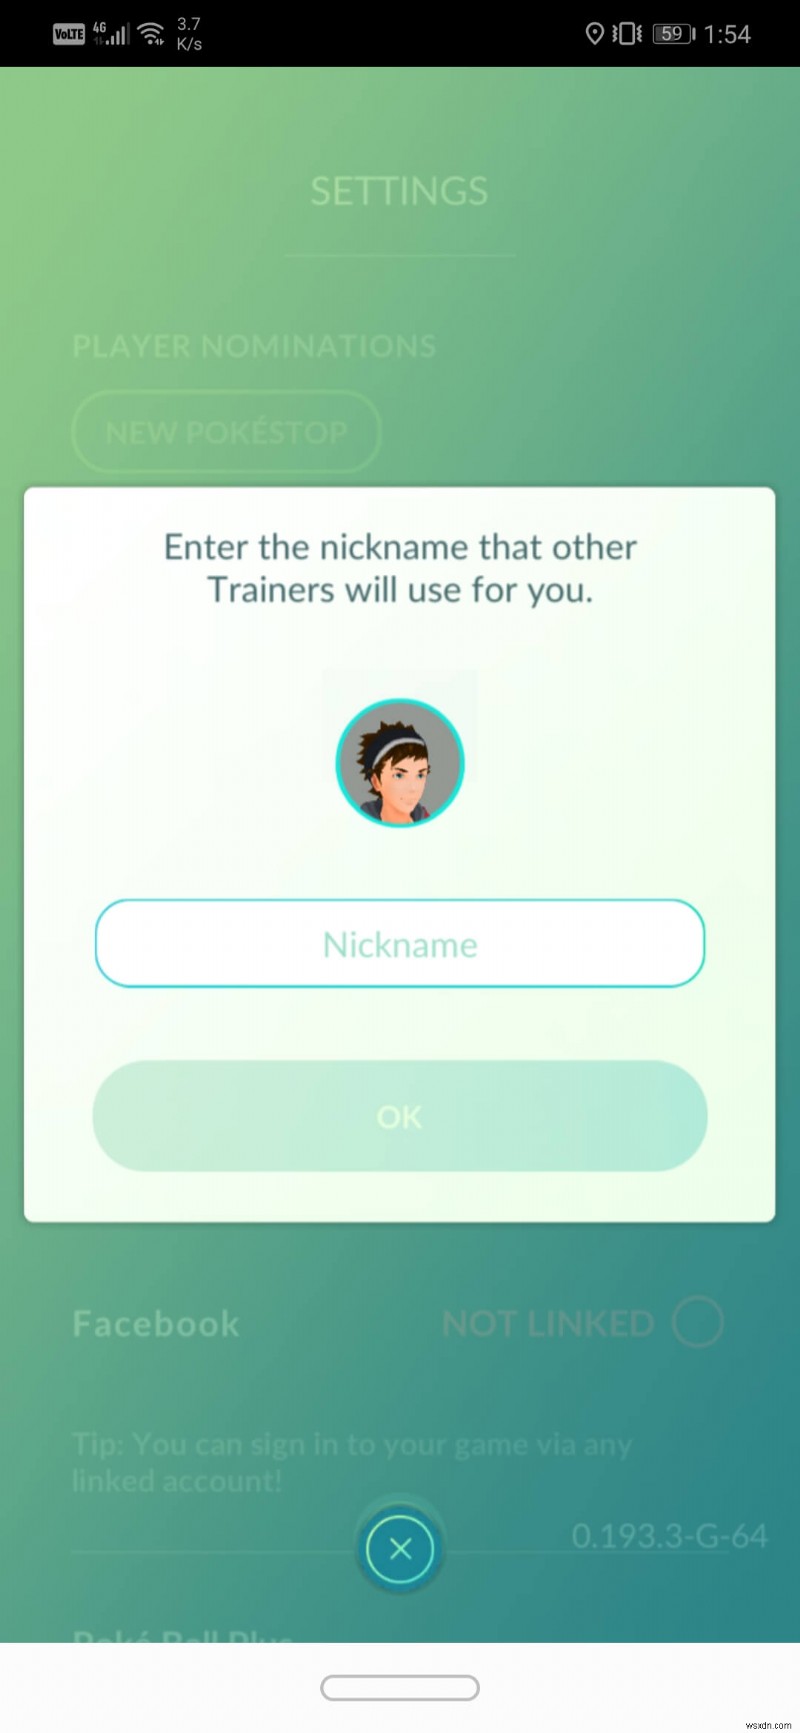 Cách đổi tên Pokémon sau bản cập nhật mới